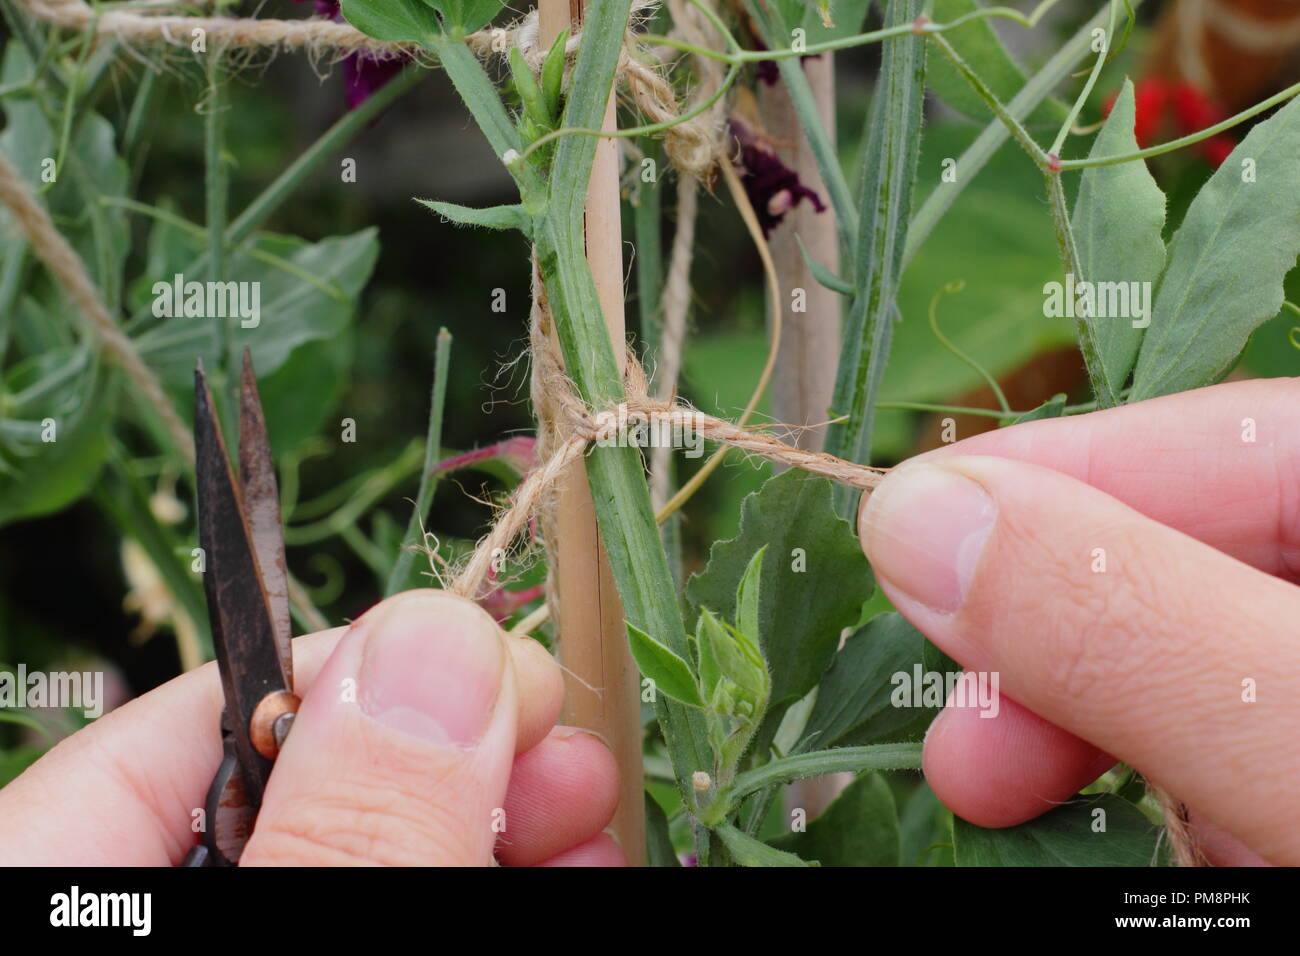 Lathyrus Odoratus. Gärtner Bindungen in Sweet pea Pflanzen Stöcke mit Garten Garn stark, gerade das Wachstum zu fördern, Juli, Großbritannien Stockfoto